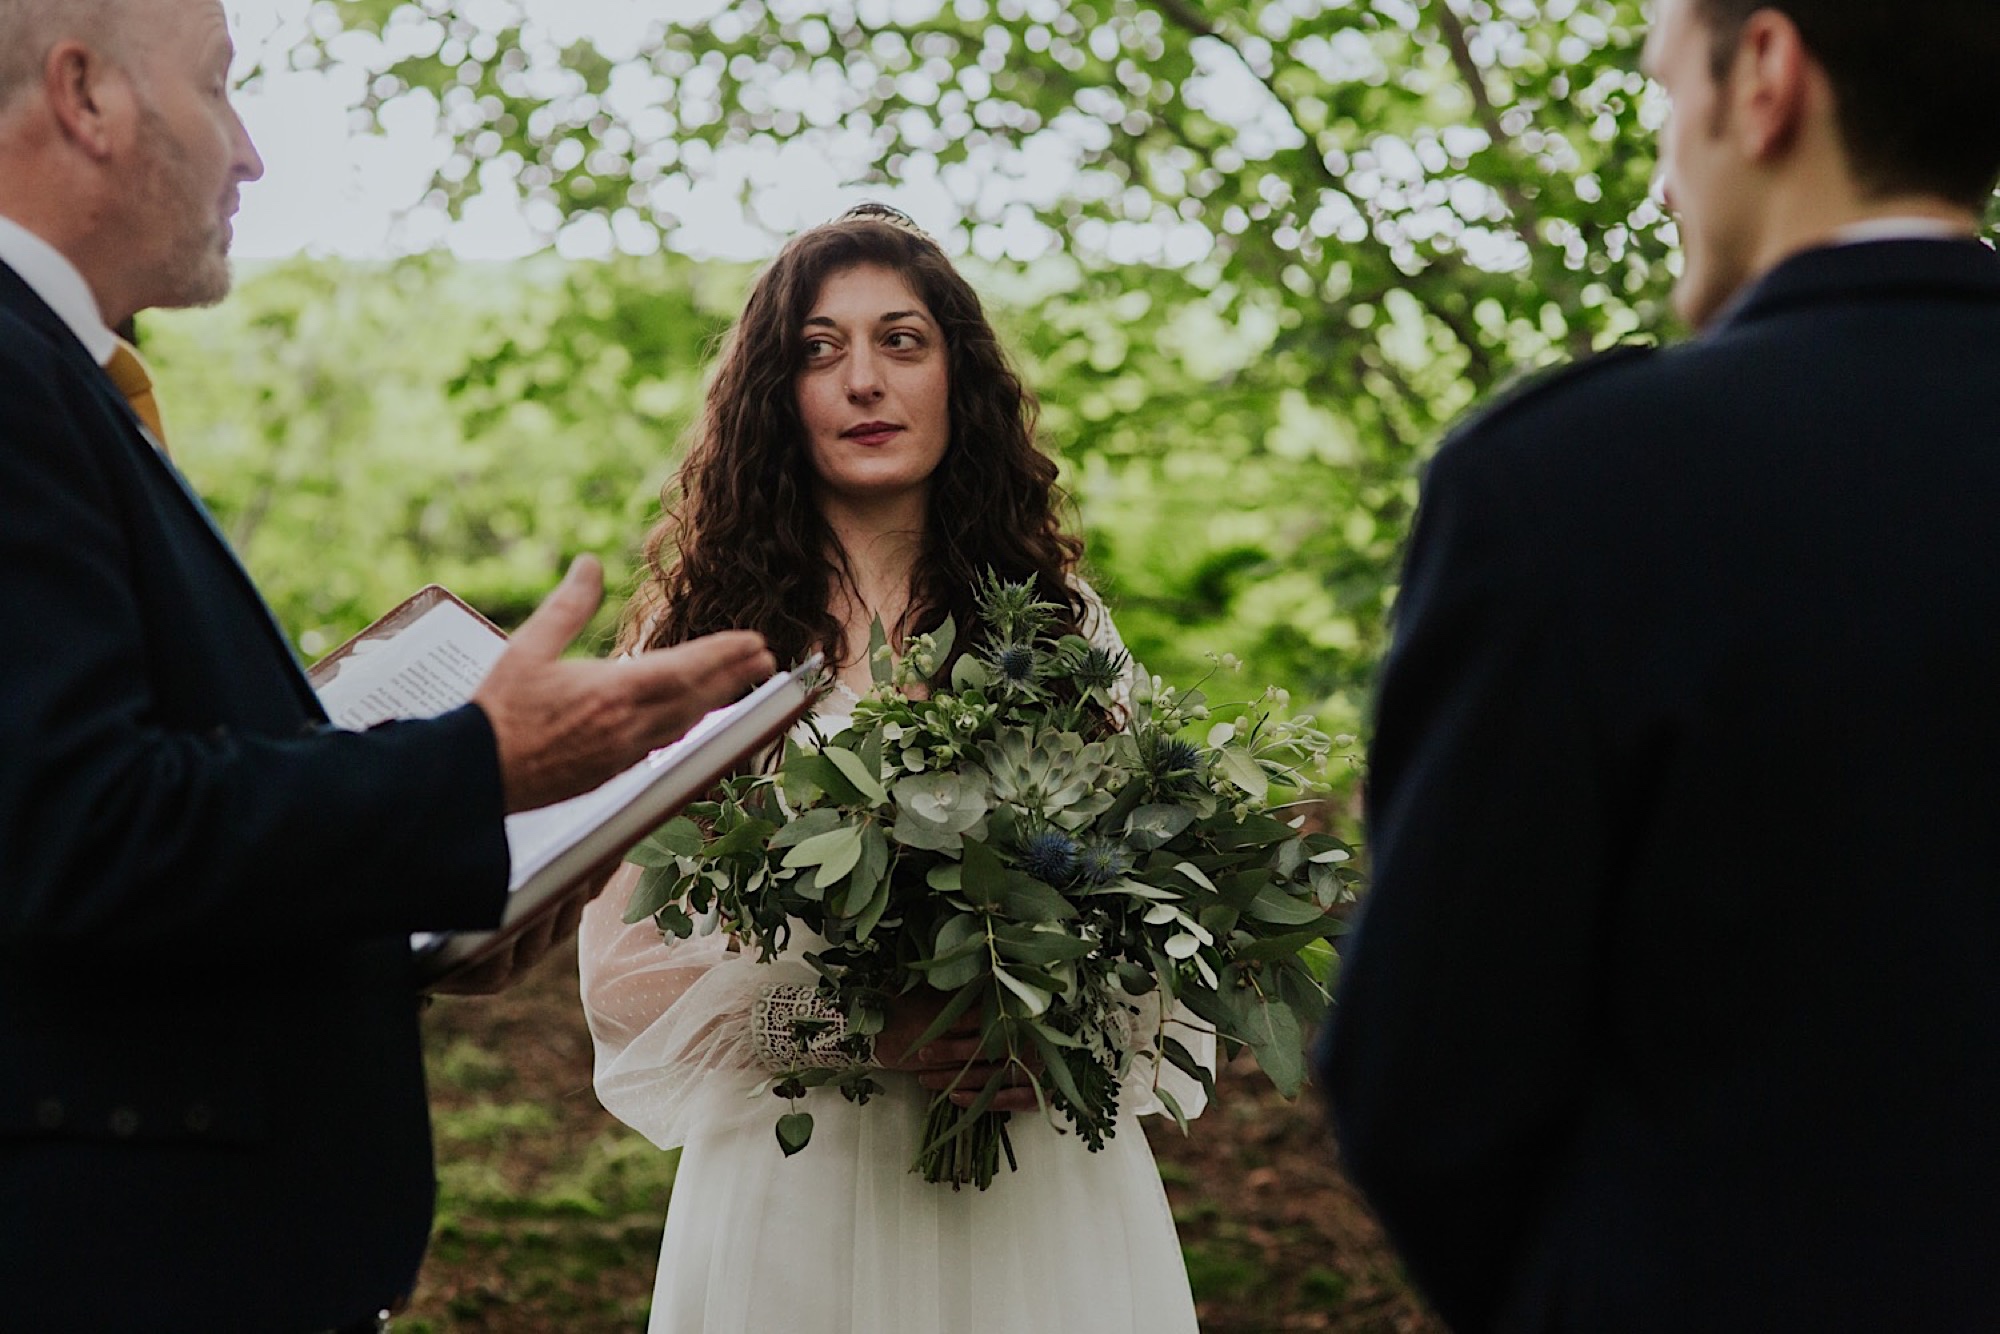 romantic woodland wedding ceremony